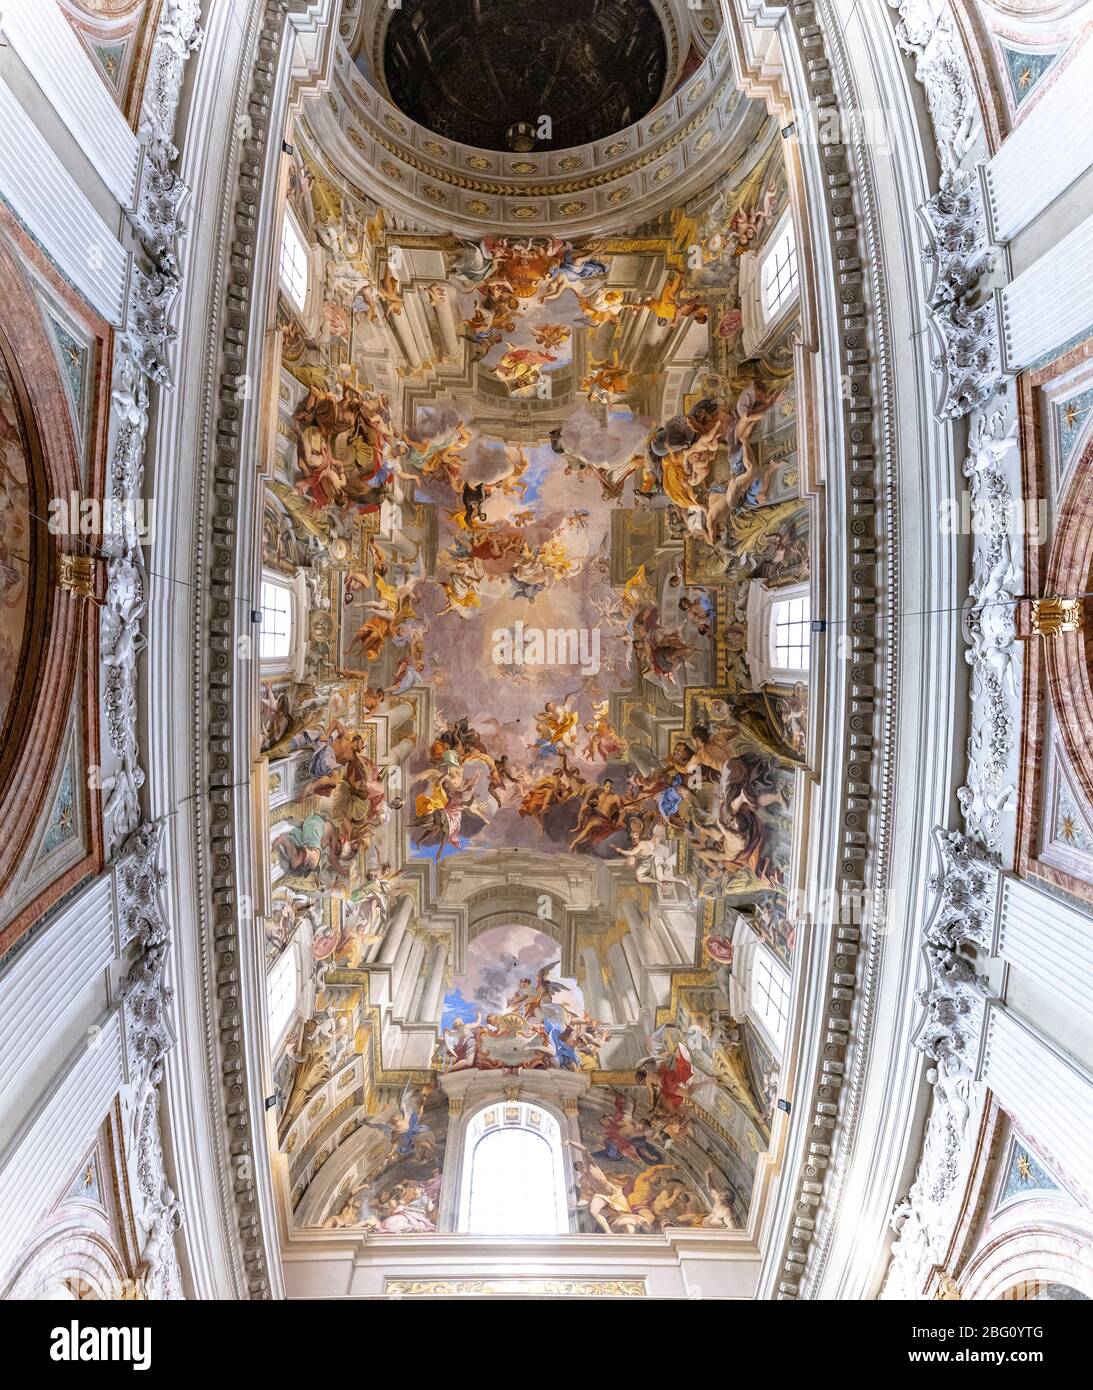 Techo de la iglesia de San Ignacio Loyola en Roma, Italia. Famoso por la bóveda pintada con una ilusión óptica Foto de stock